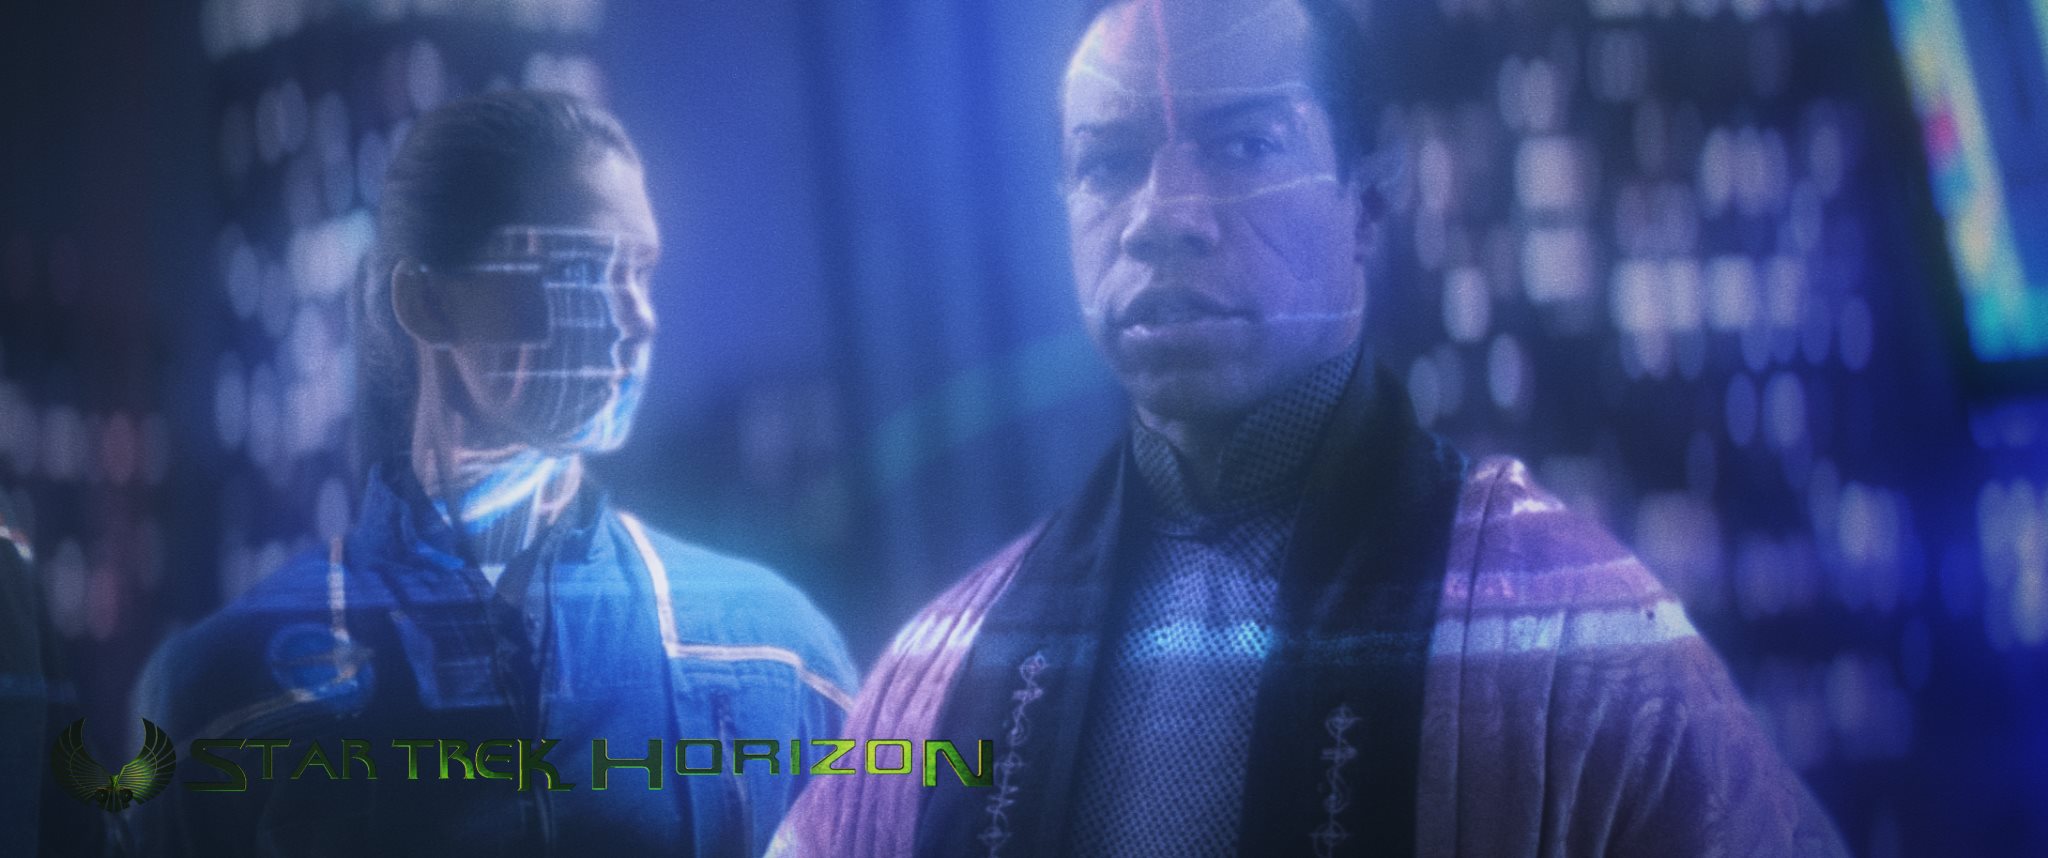 Still of Rico E. Anderson in Star Trek: Horizon